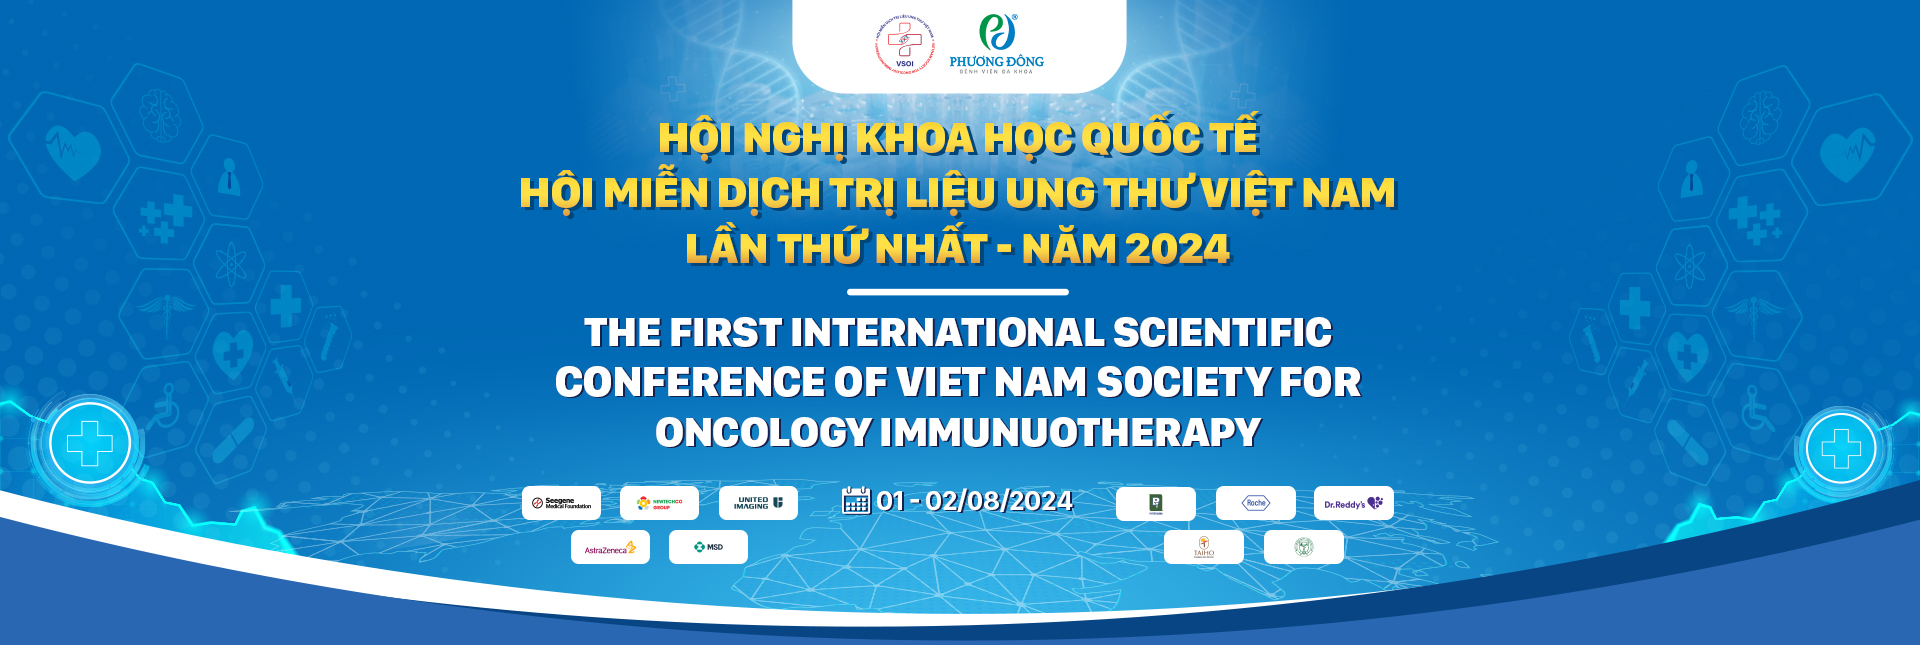 Hội nghị khoa học quốc tế Hội Miễn dịch trị liệu ung thư Việt Nam lần thứ nhất - năm 2024